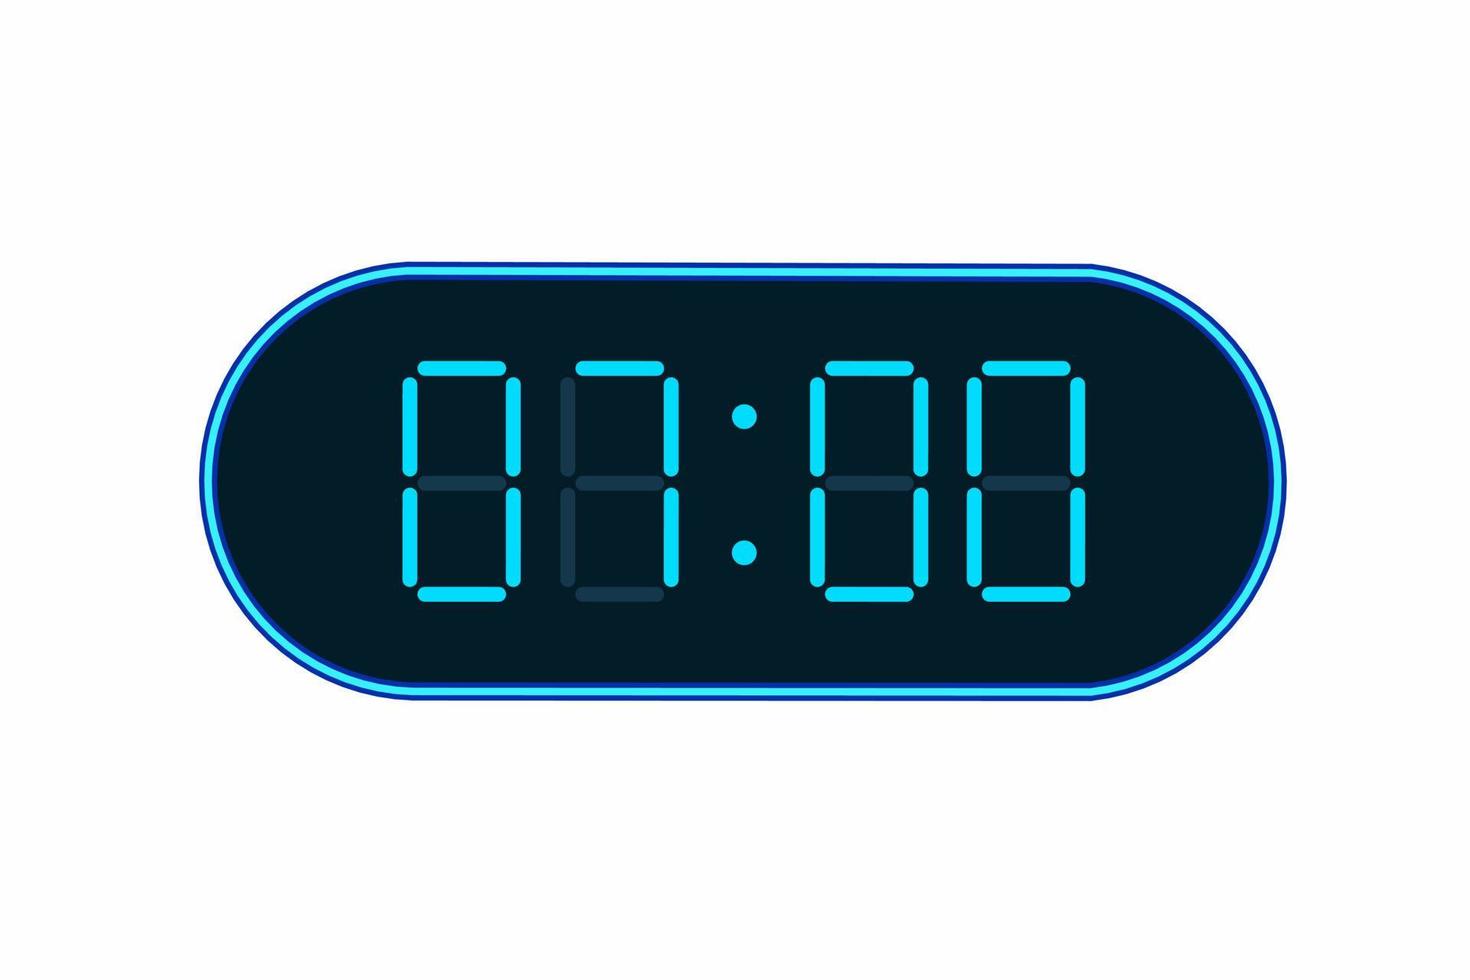 illustrazione piatta vettoriale di un orologio digitale che mostra le 07:00. illustrazione di allarme con numero digitale design. icona dell'orologio per ora, orologio, segnali di allarme